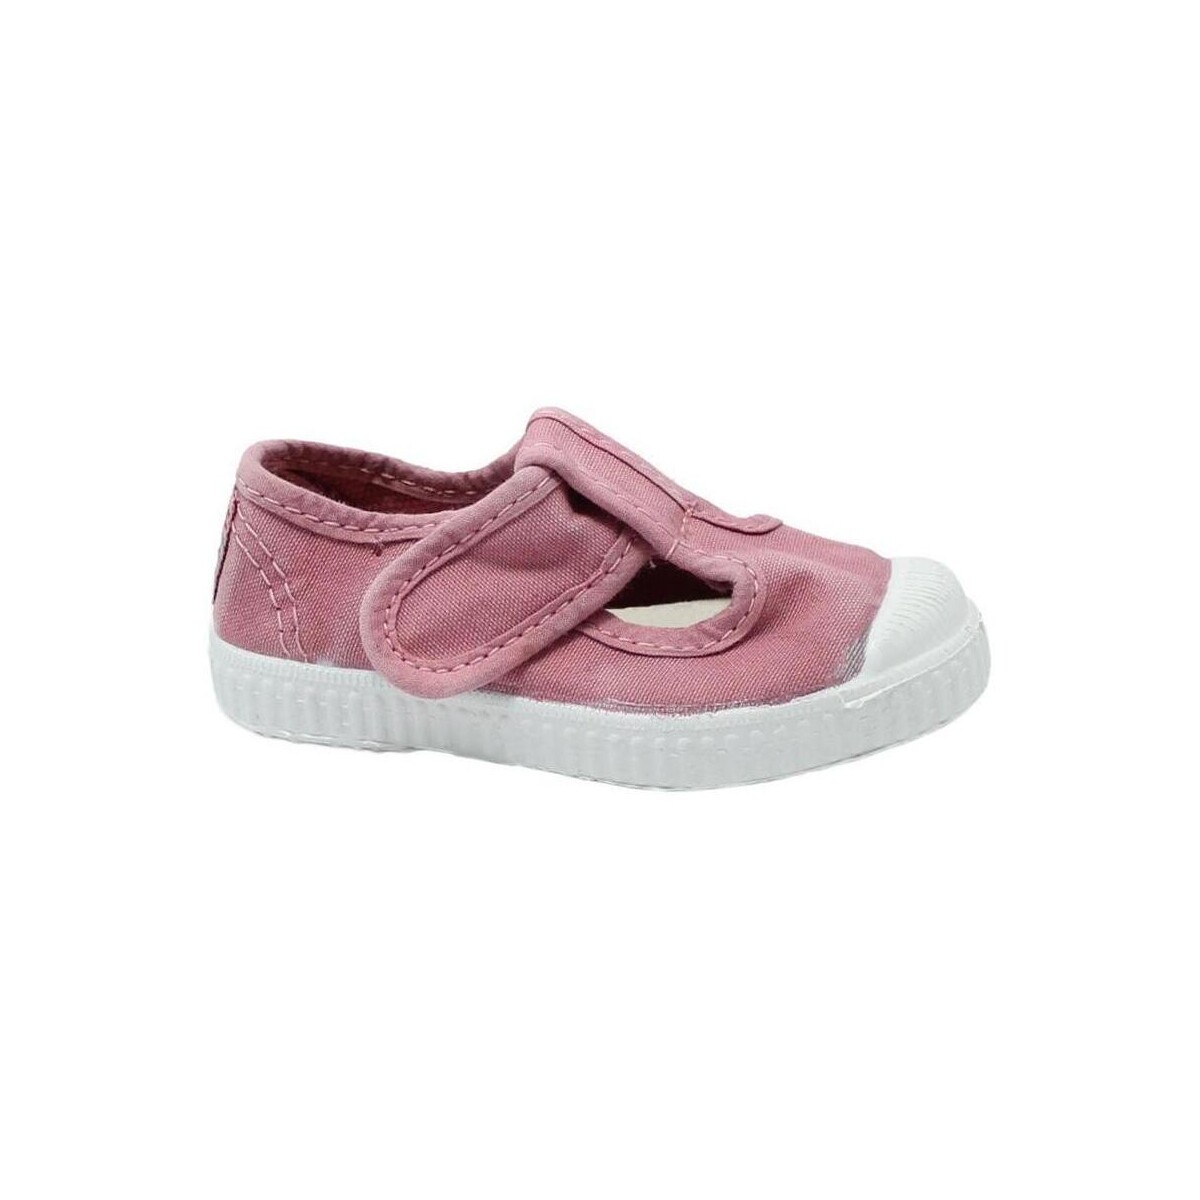 Sapatos Criança Sabrinas Cienta CIE-CCC-77777-42-1 Rosa